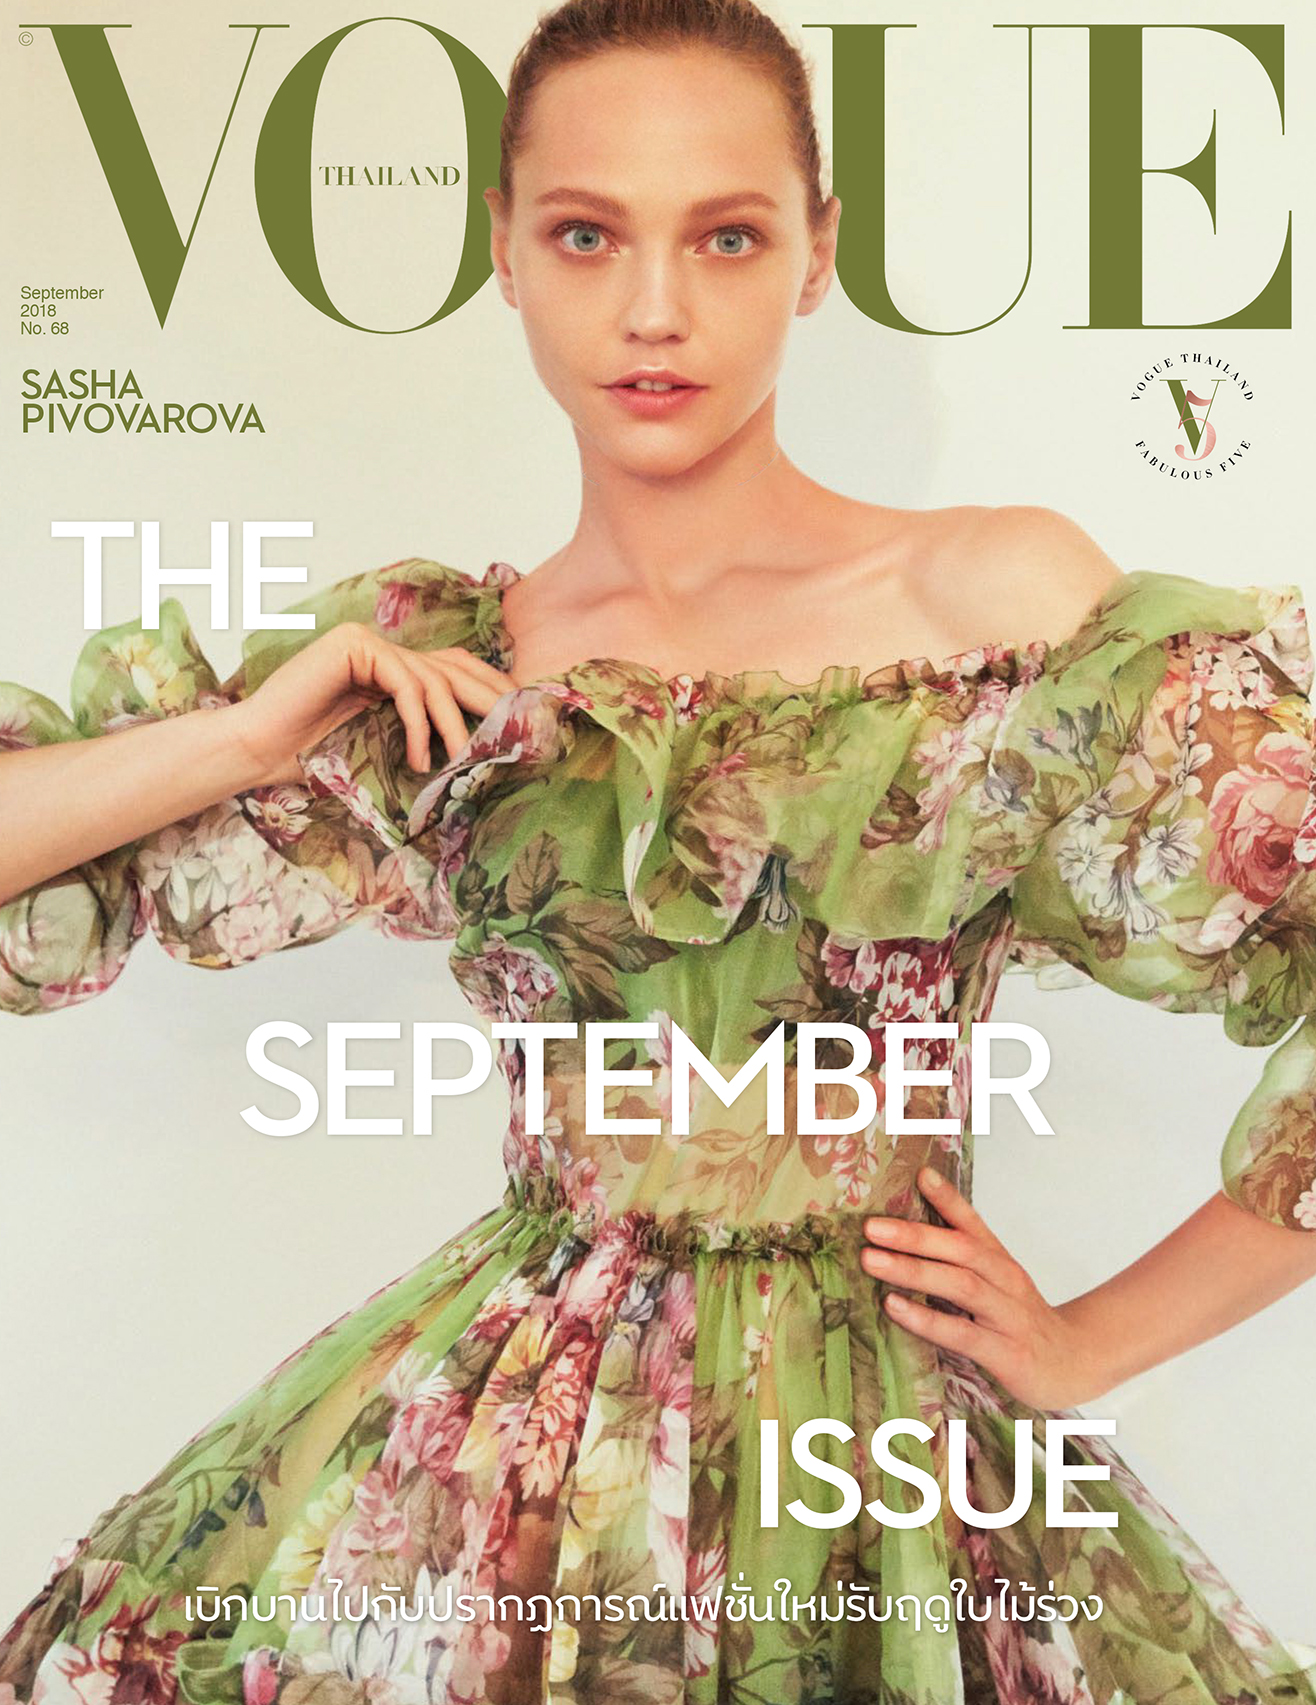 Sasha Pivovarova by Natth Jaturapahu for Vogue Thailand Sept 2018 (14).jpg